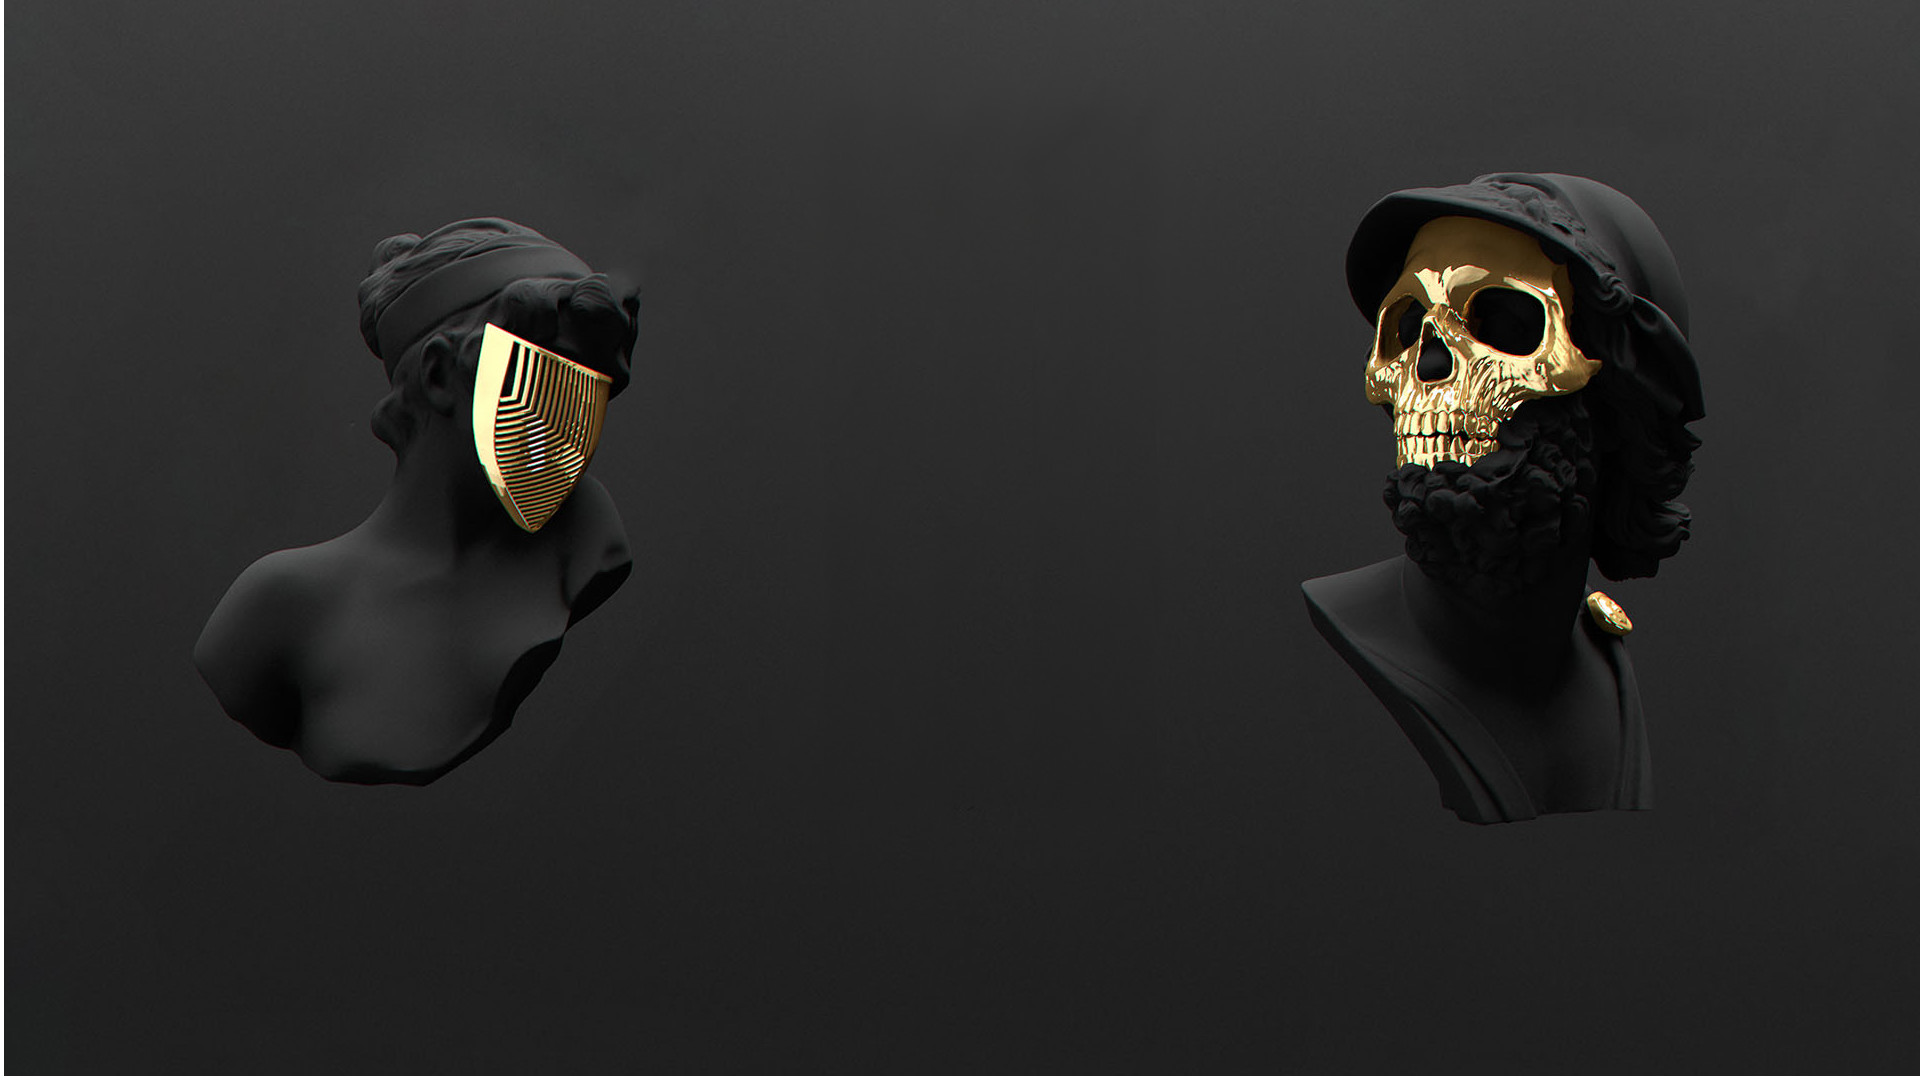 Маска на черном фоне. Черный череп. Золотой череп на черном фоне. Крутые маски.